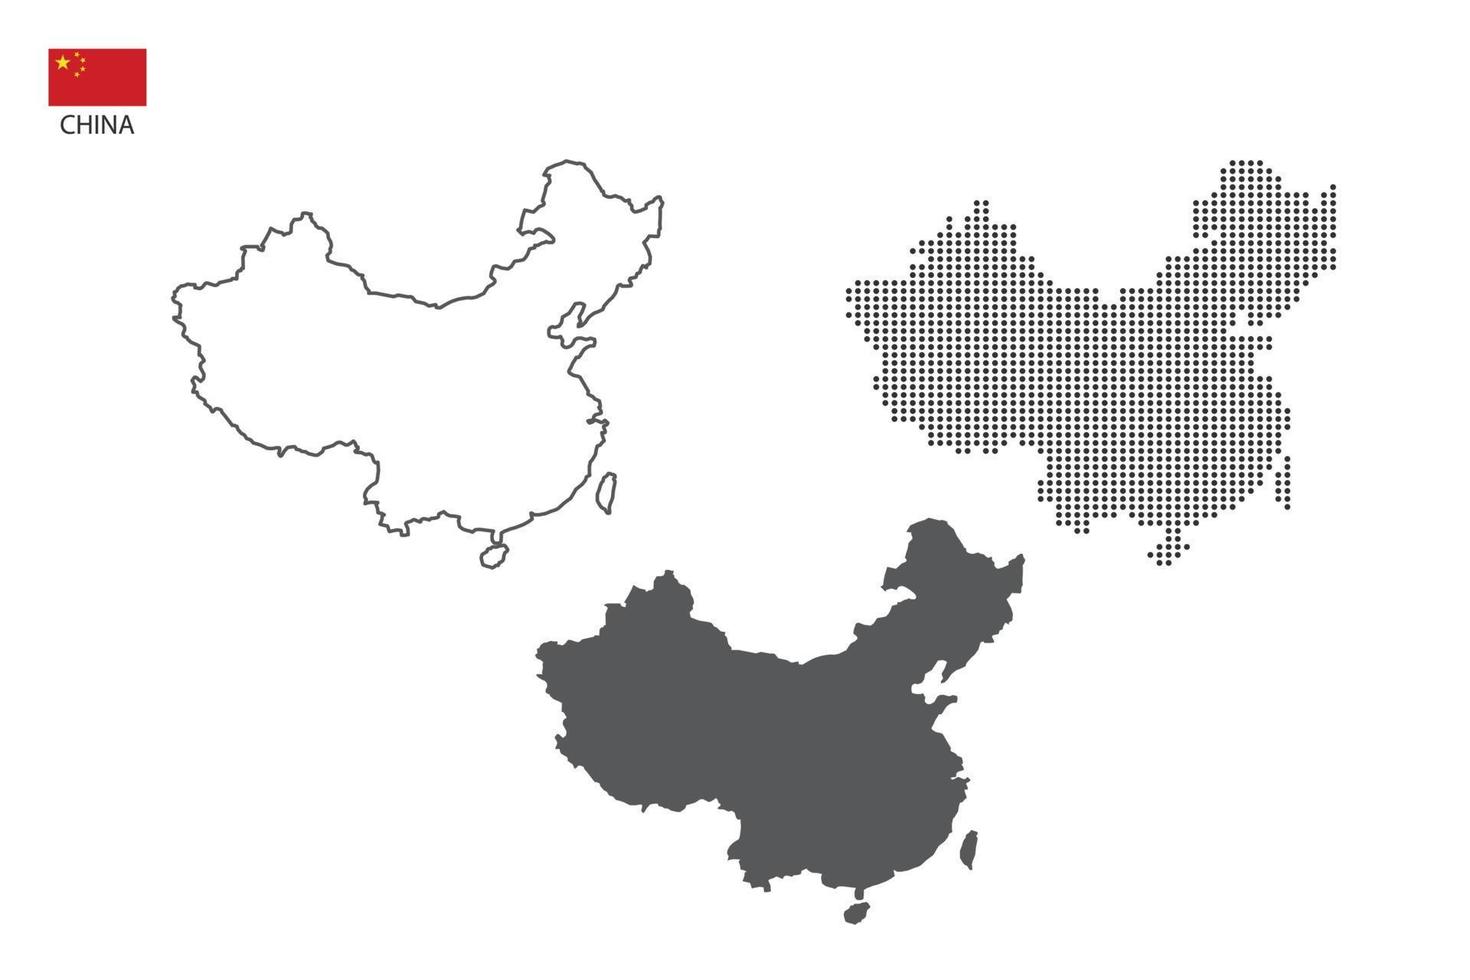 3 versões do vetor da cidade do mapa da china por estilo de simplicidade de contorno preto fino, estilo de ponto preto e estilo de sombra escura. tudo no fundo branco.